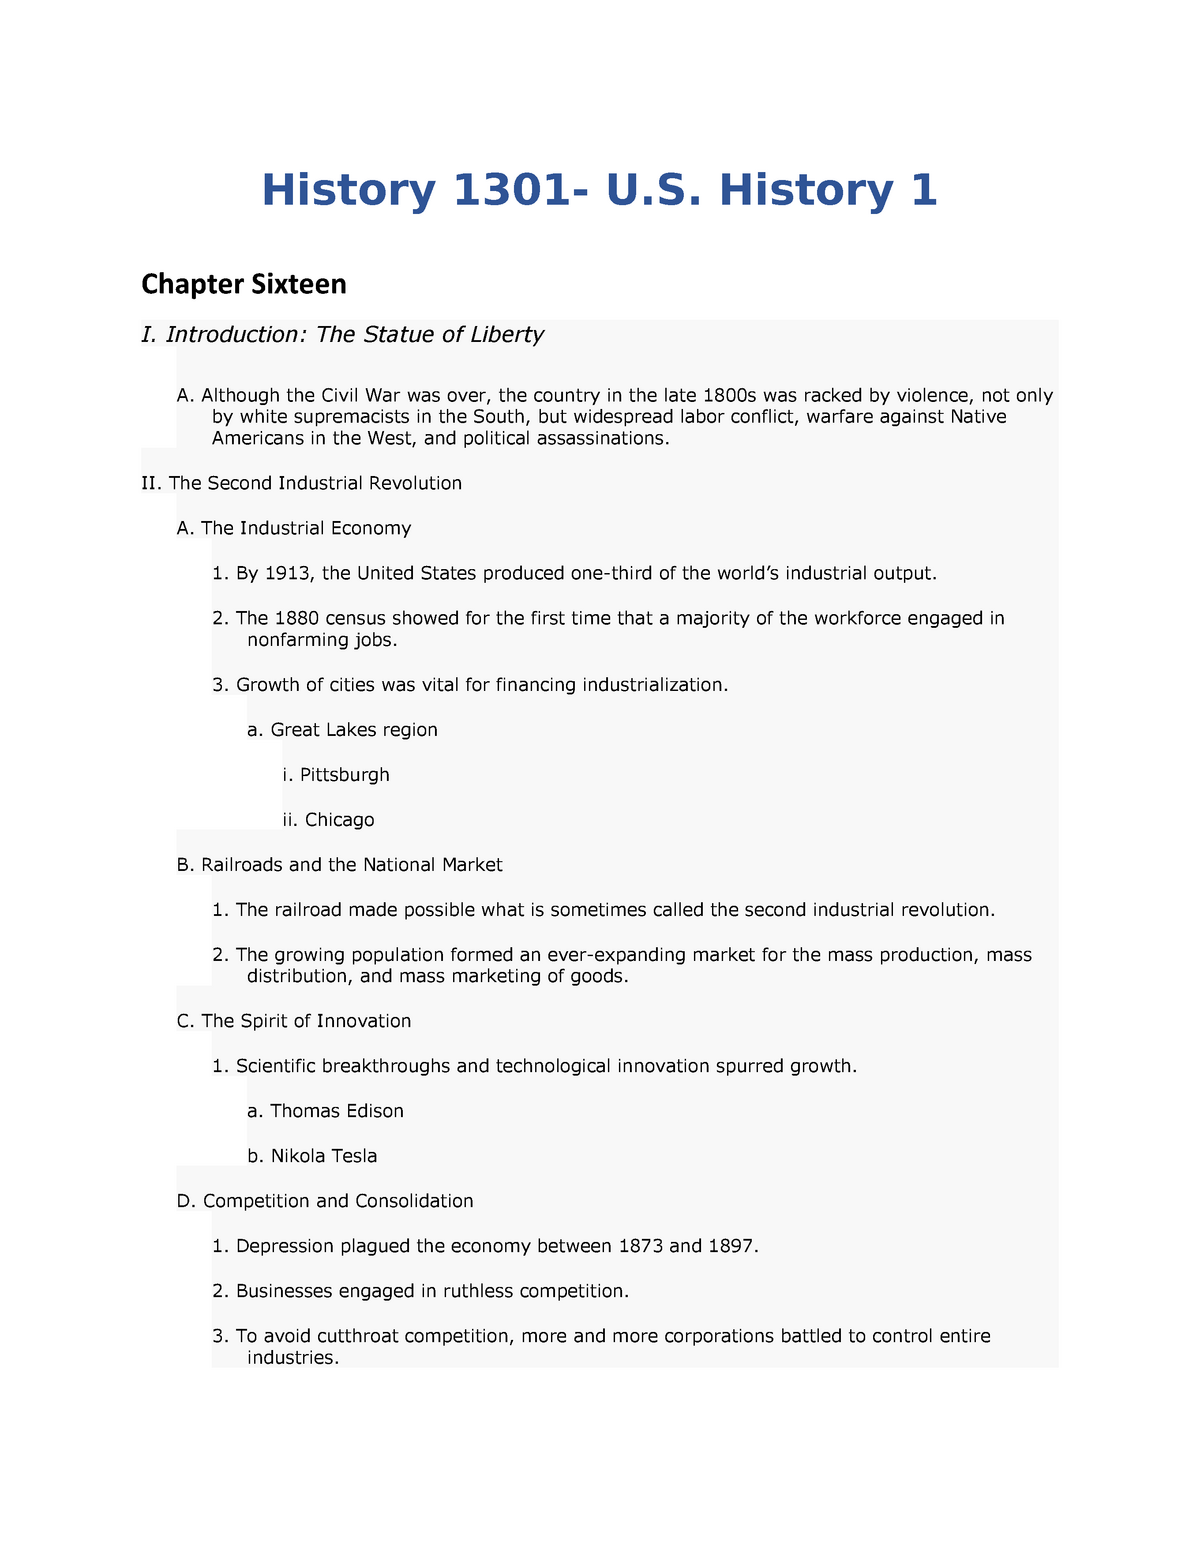 history 1301 essay